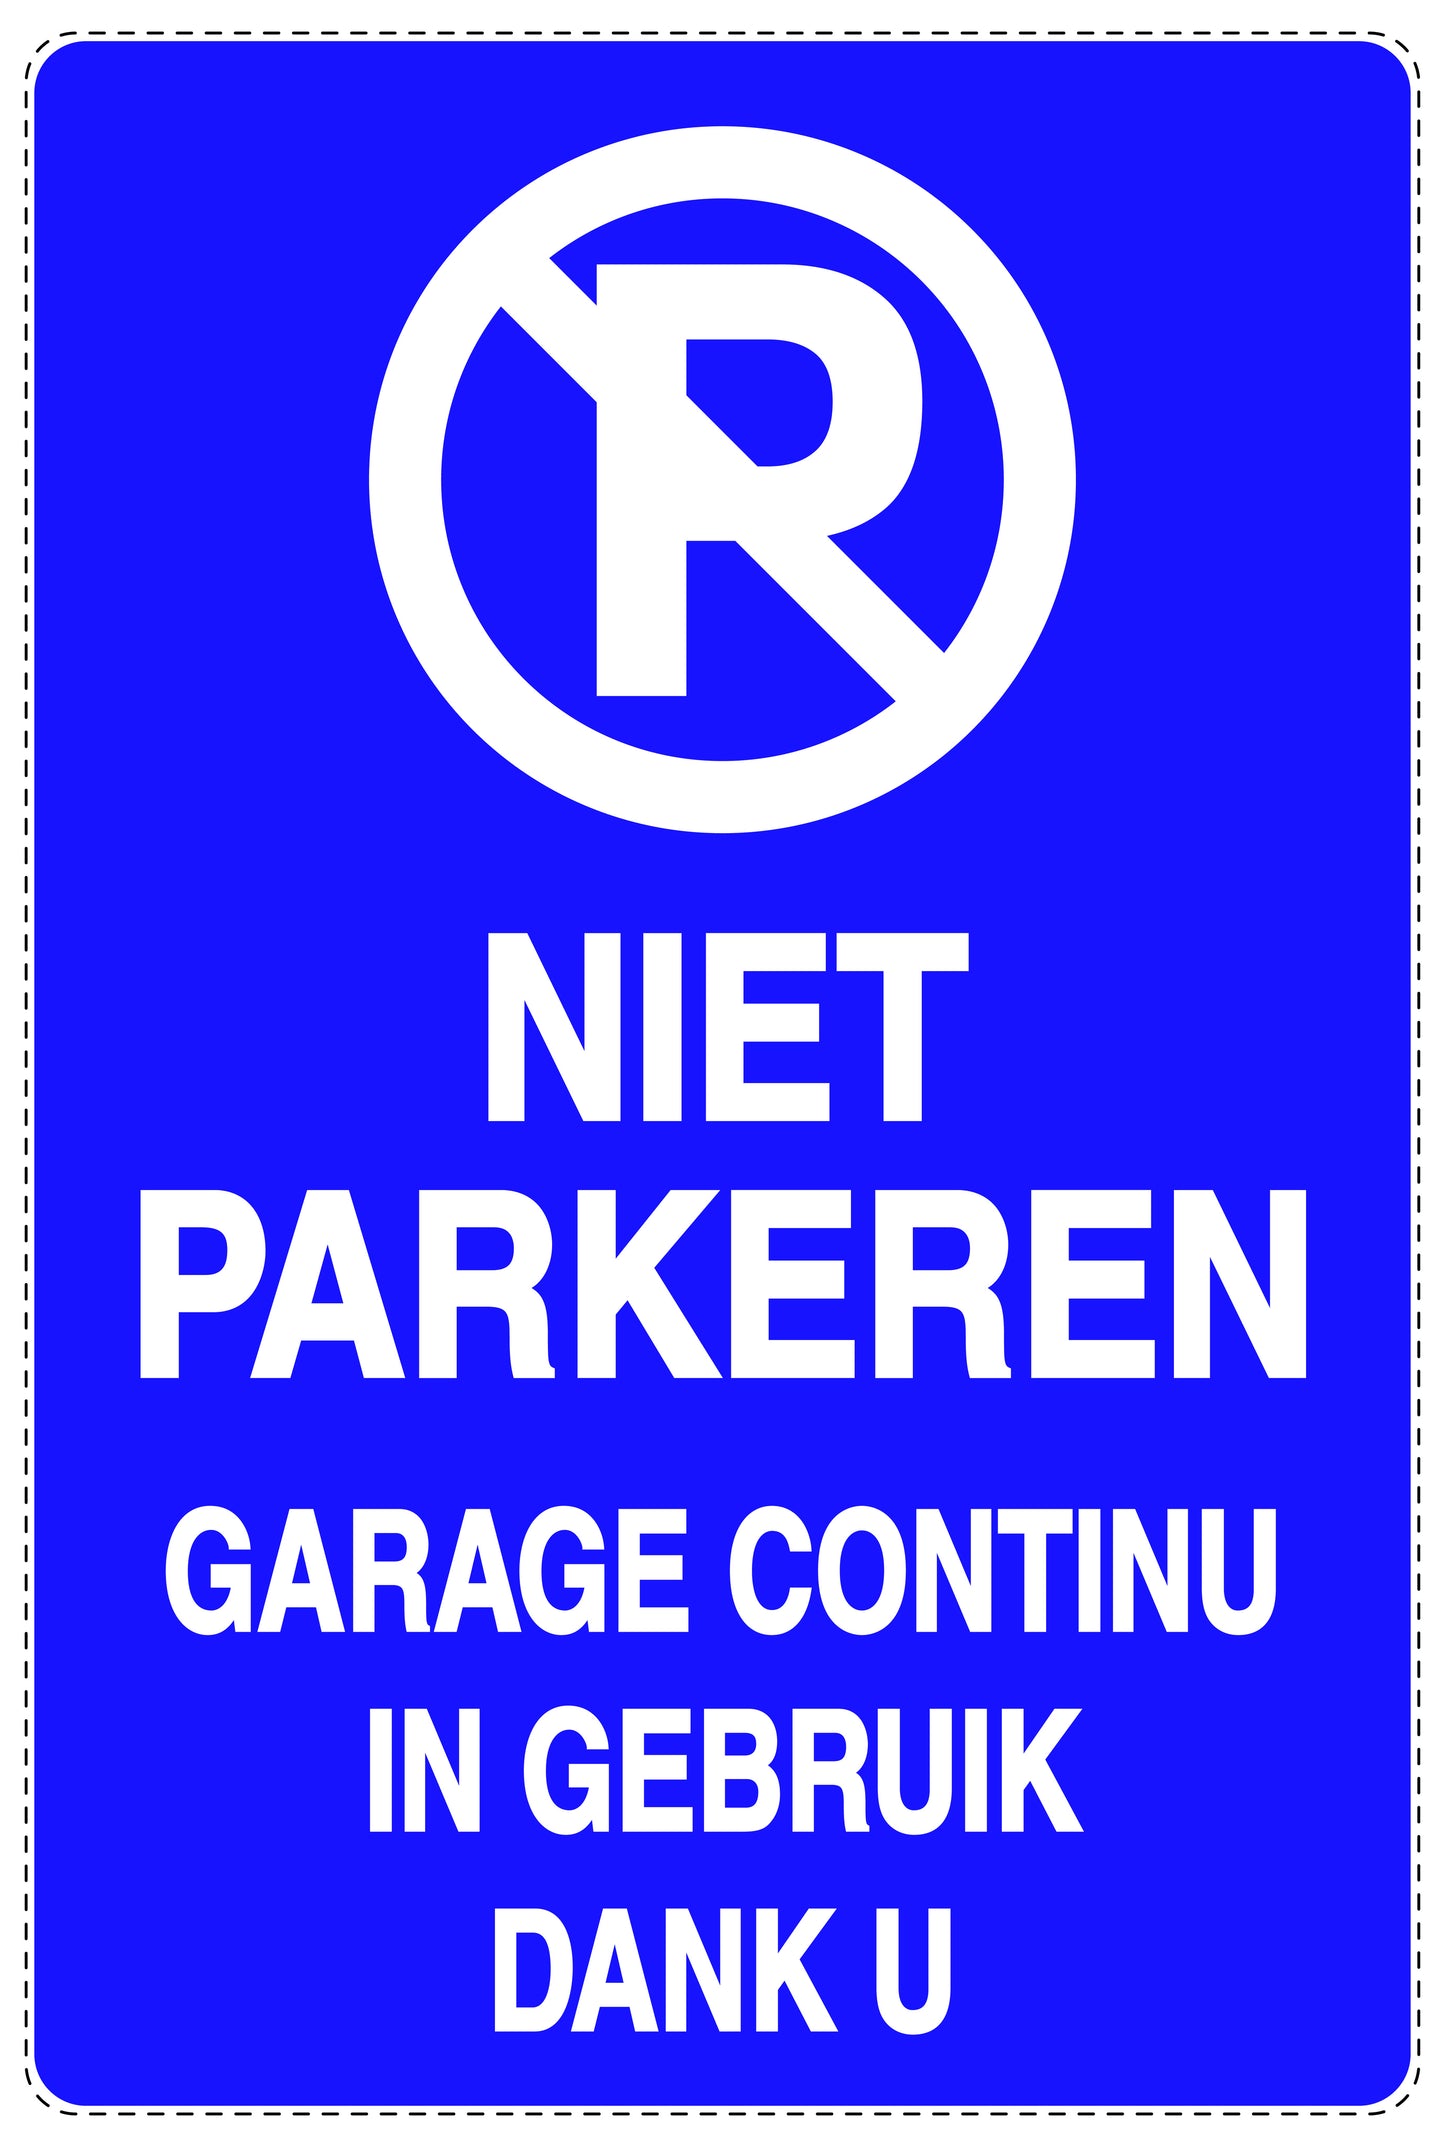 Niet parkeren Sticker "Niet parkeren garage continu in gebruik dank u" EW-NPRK-2000-44